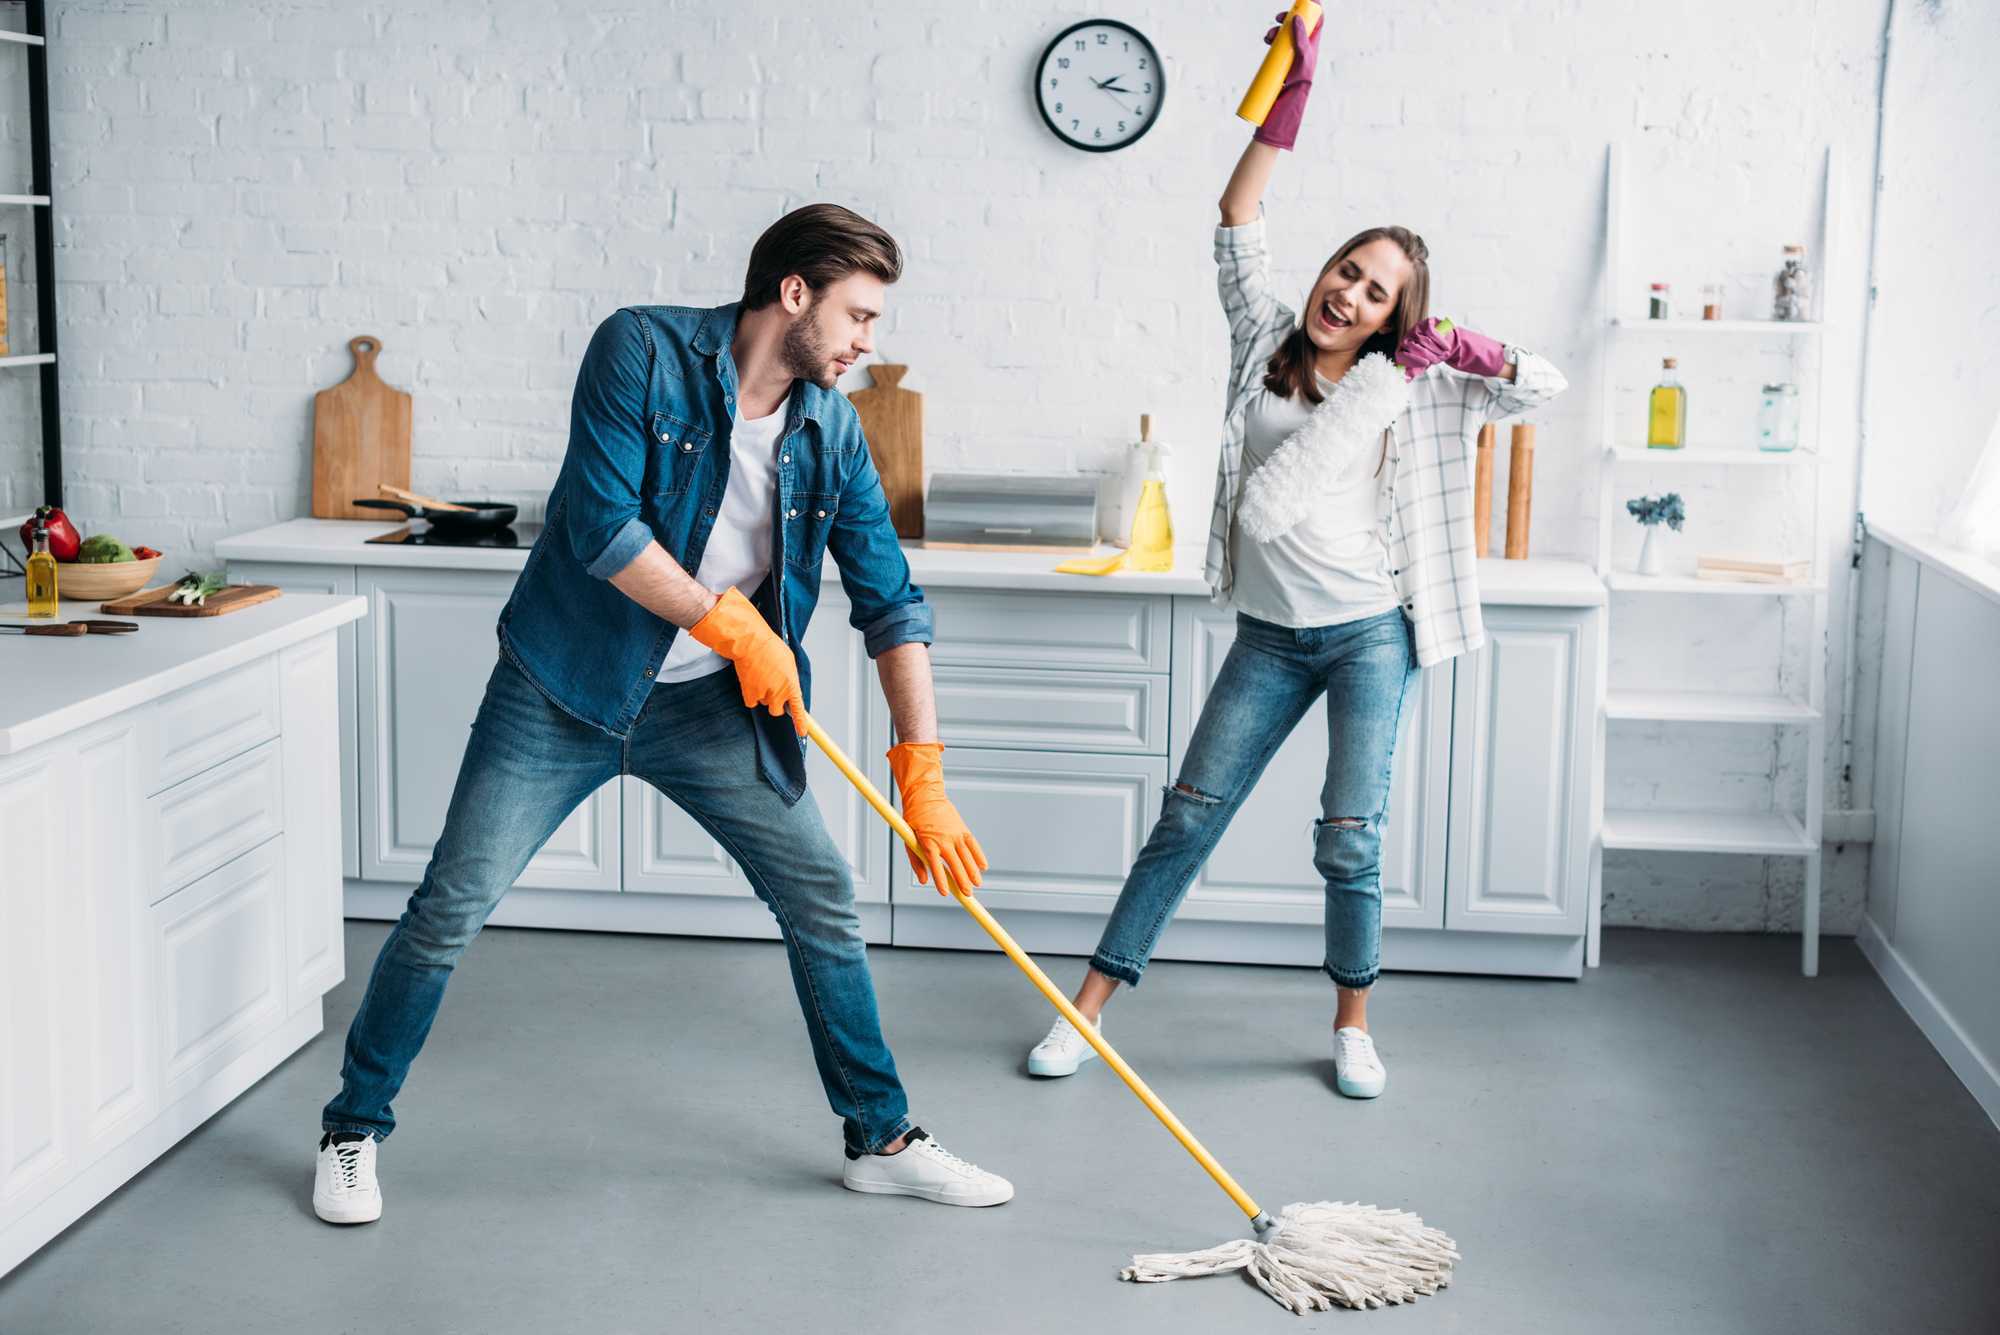 "в жизни есть более важные вещи, чем уборка": как сократить время домашнего труда до 30 минут и никогда не заниматься генеральной чисткой квартиры